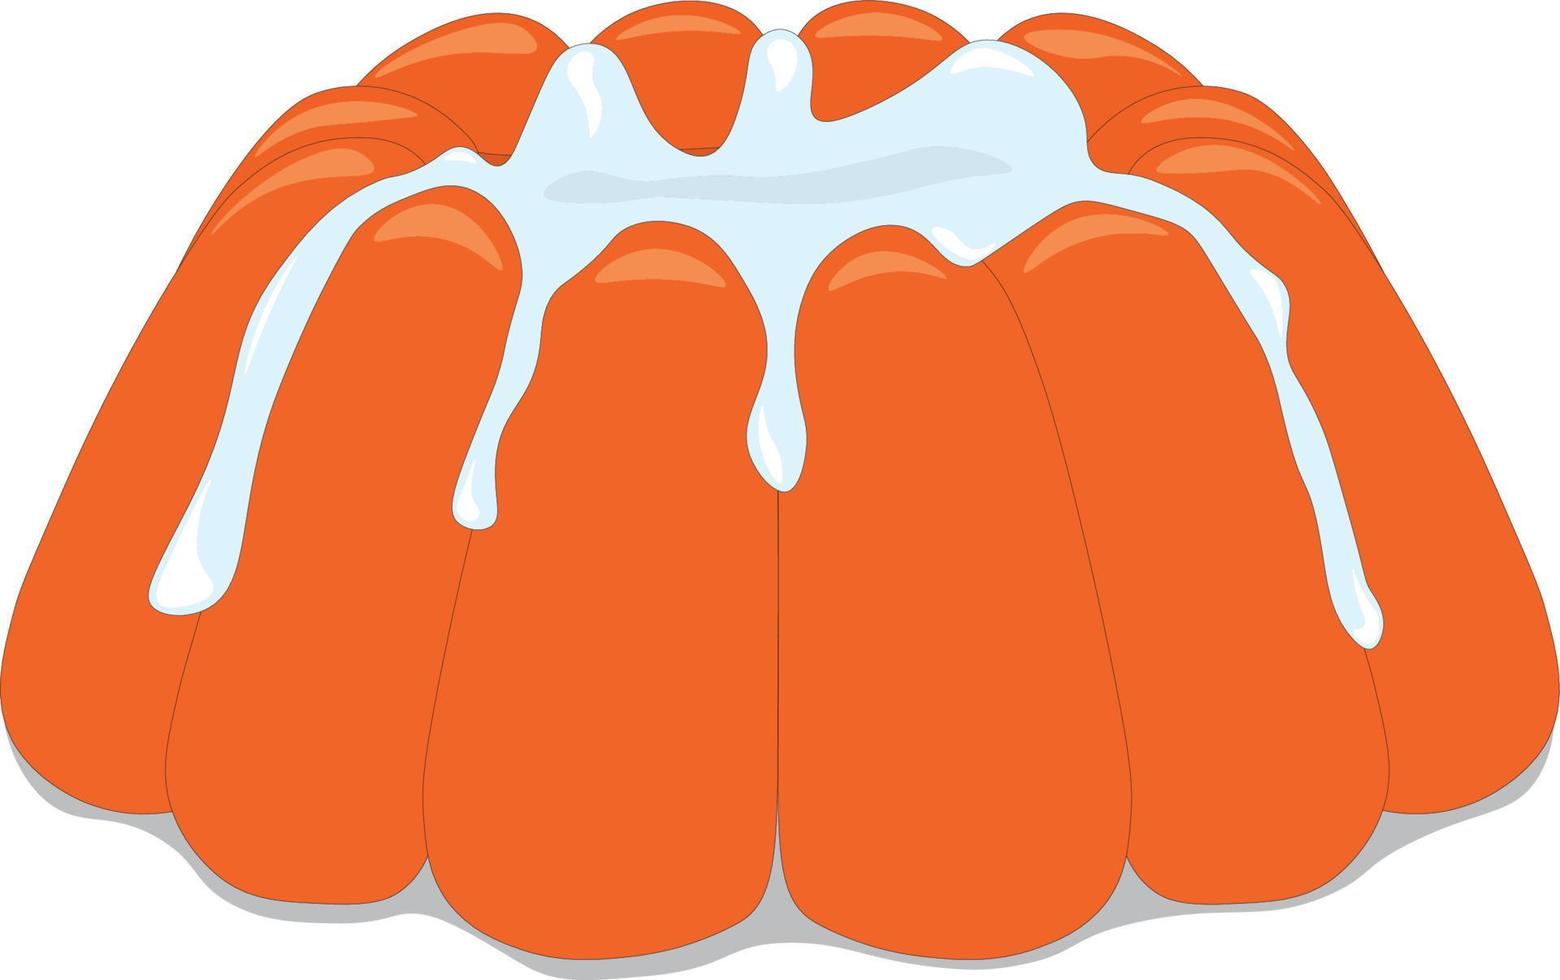 budino di gelatina all'arancia con illustrazione vettoriale di topping cremoso